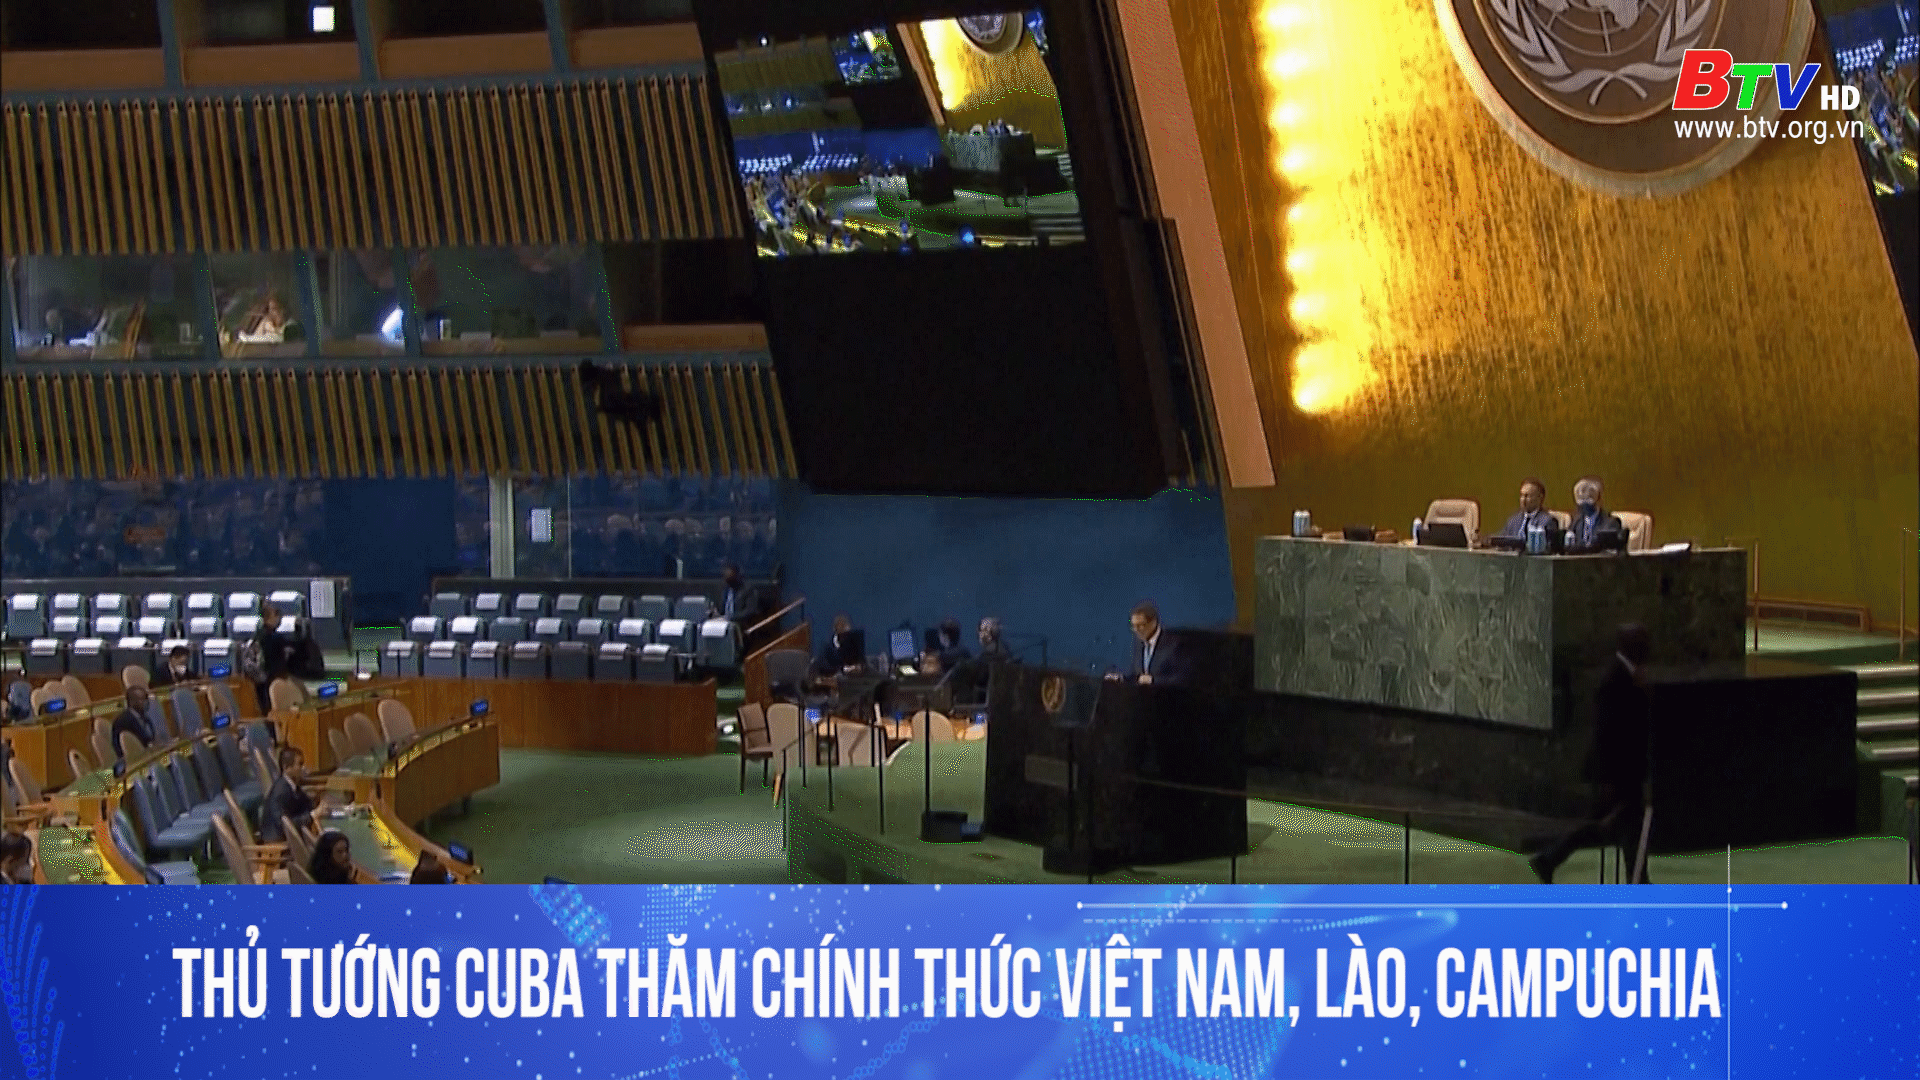 Thủ tướng Cuba thăm chính thức Việt Nam, Lào, Campuchia